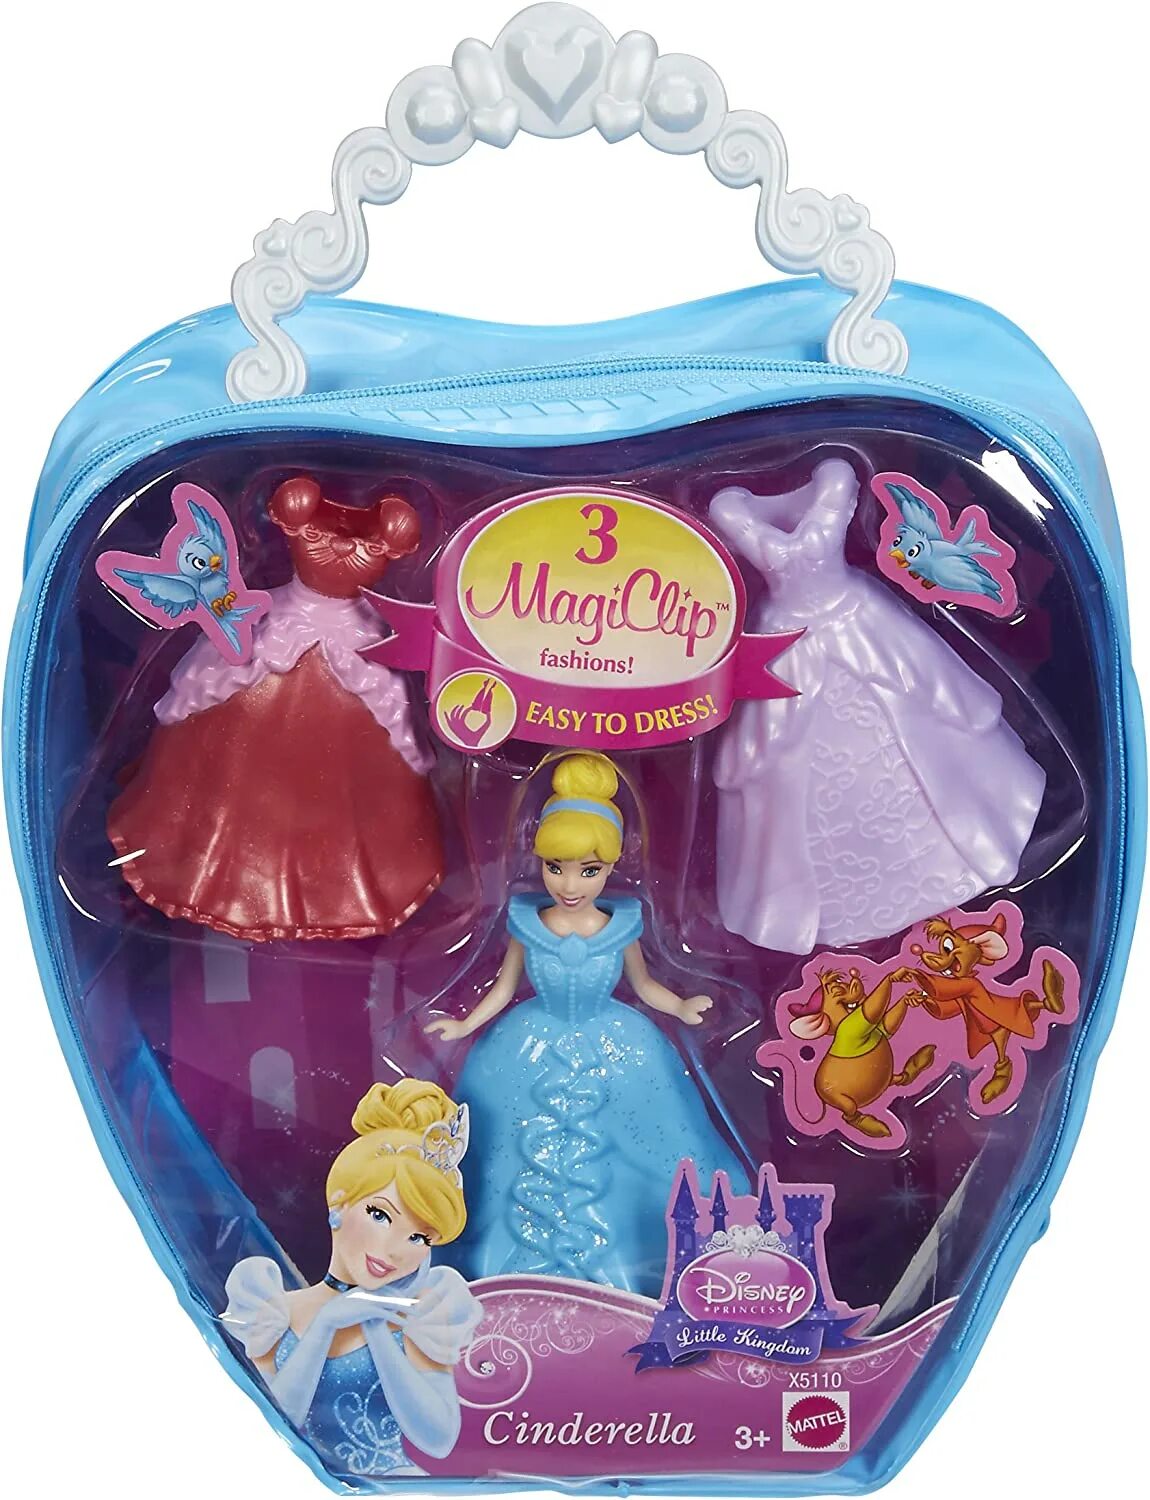 Набор принцесса. Mattel принцессы Disney Magiclip. Мини принцессы Диснея Magiclip. Мини куклы принцессы Дисней Золушка. Принцесса Дисней мини кукла е6373.